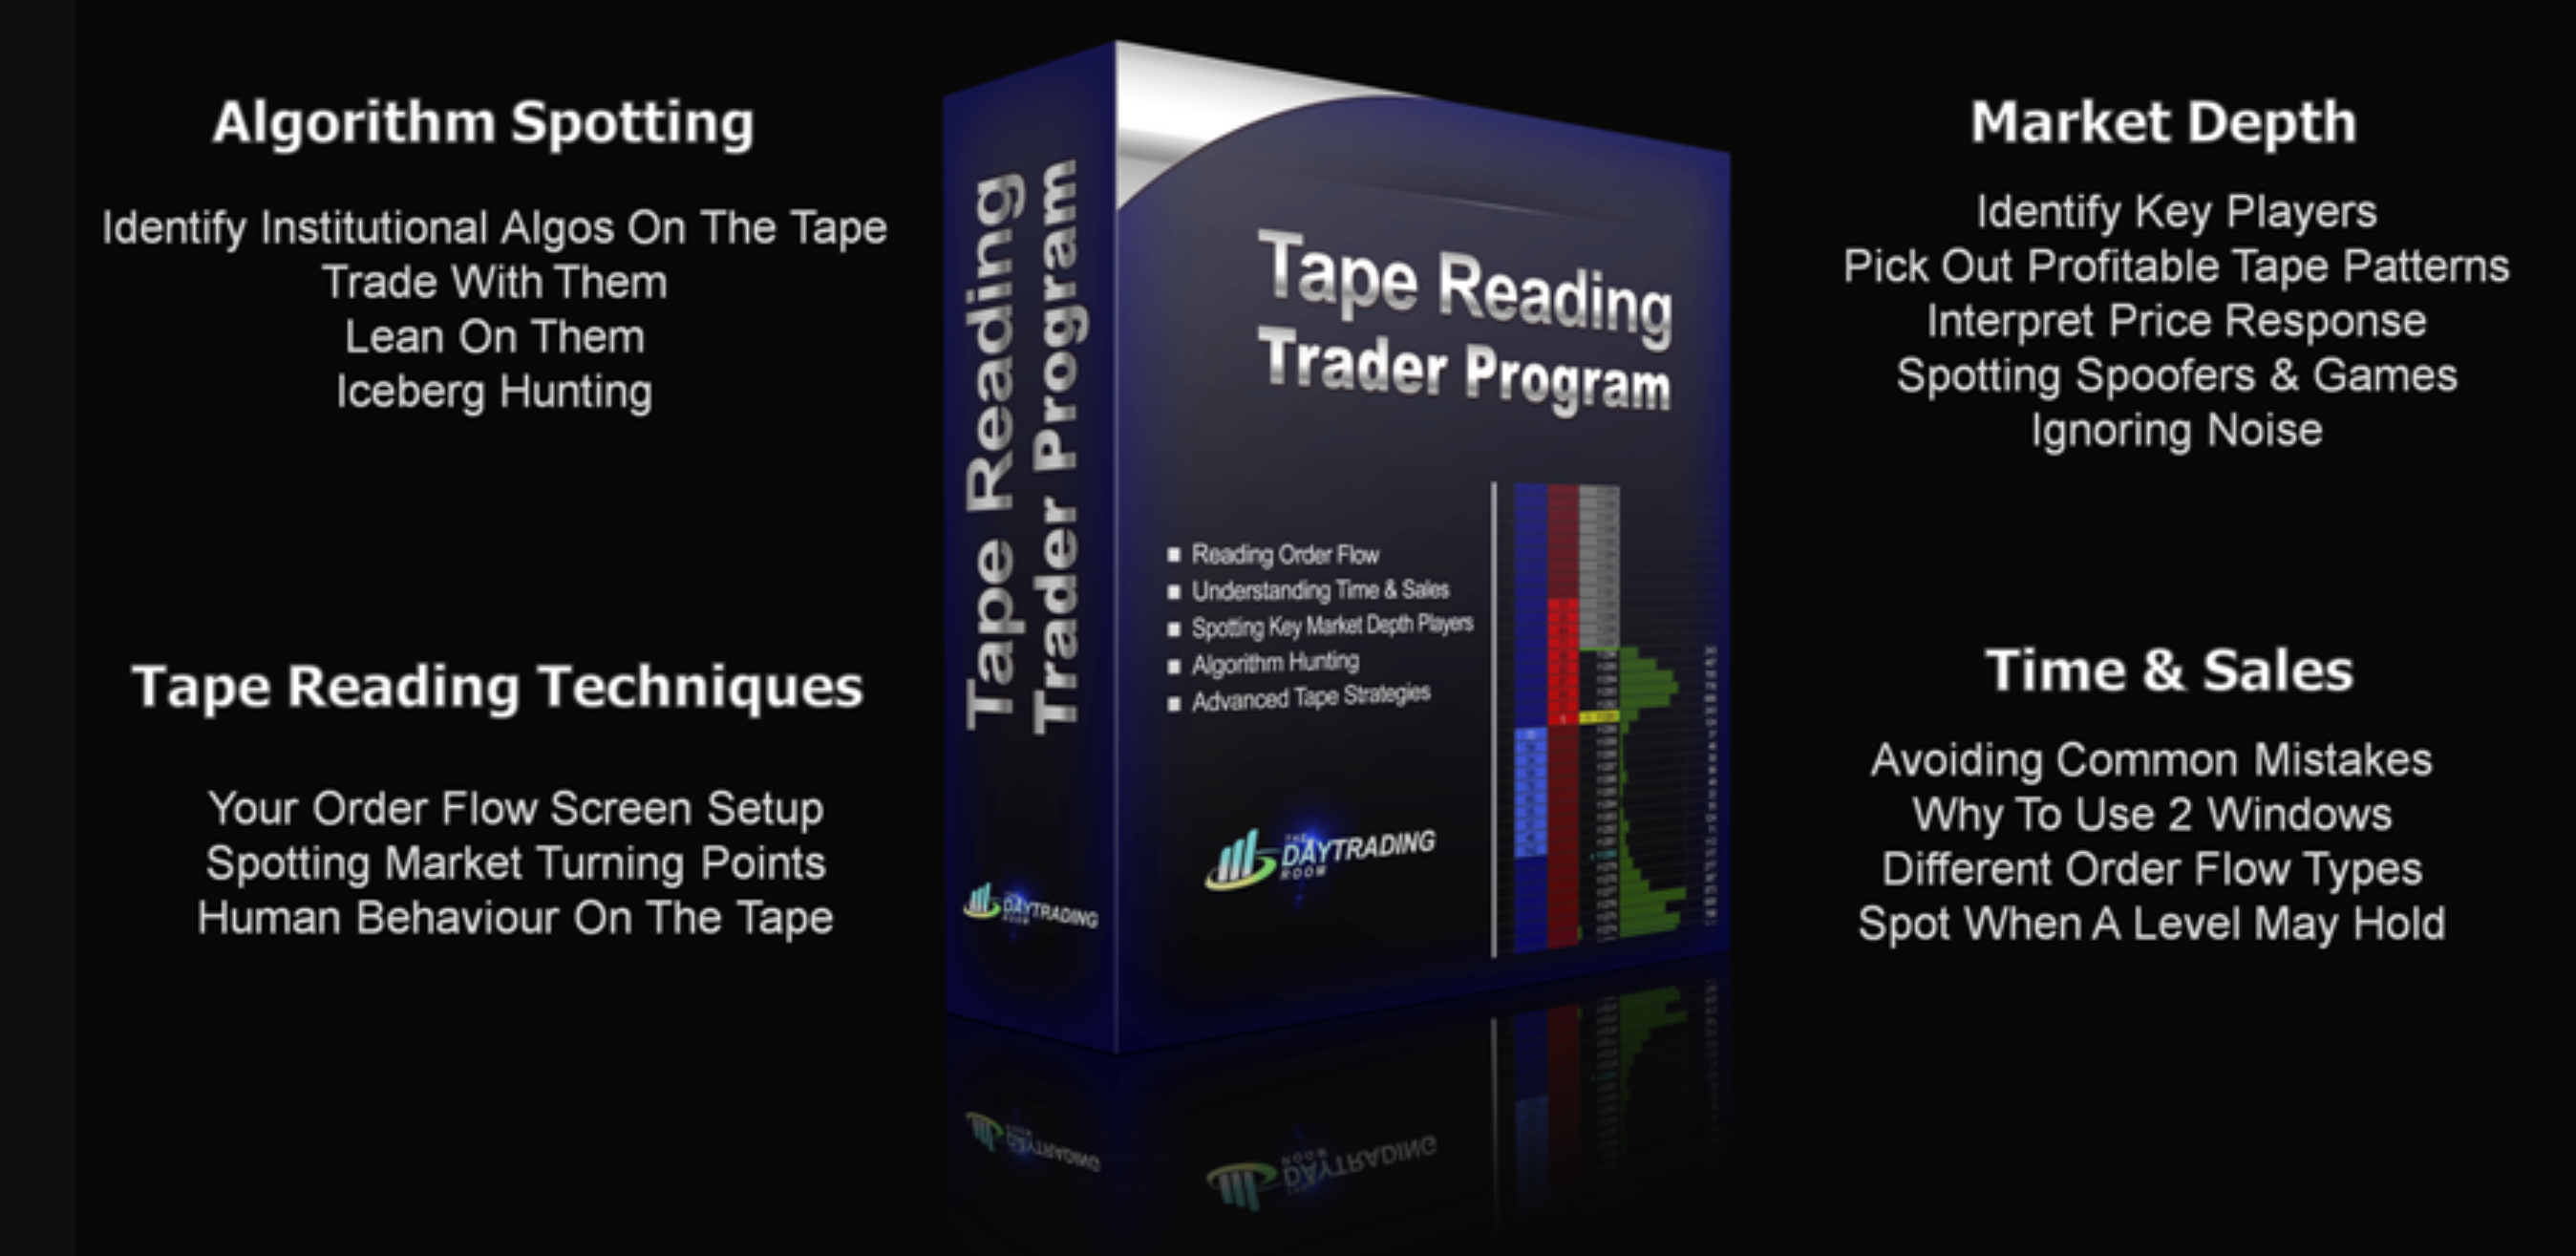 Thedaytradingroom – Tape Reading Trader Program